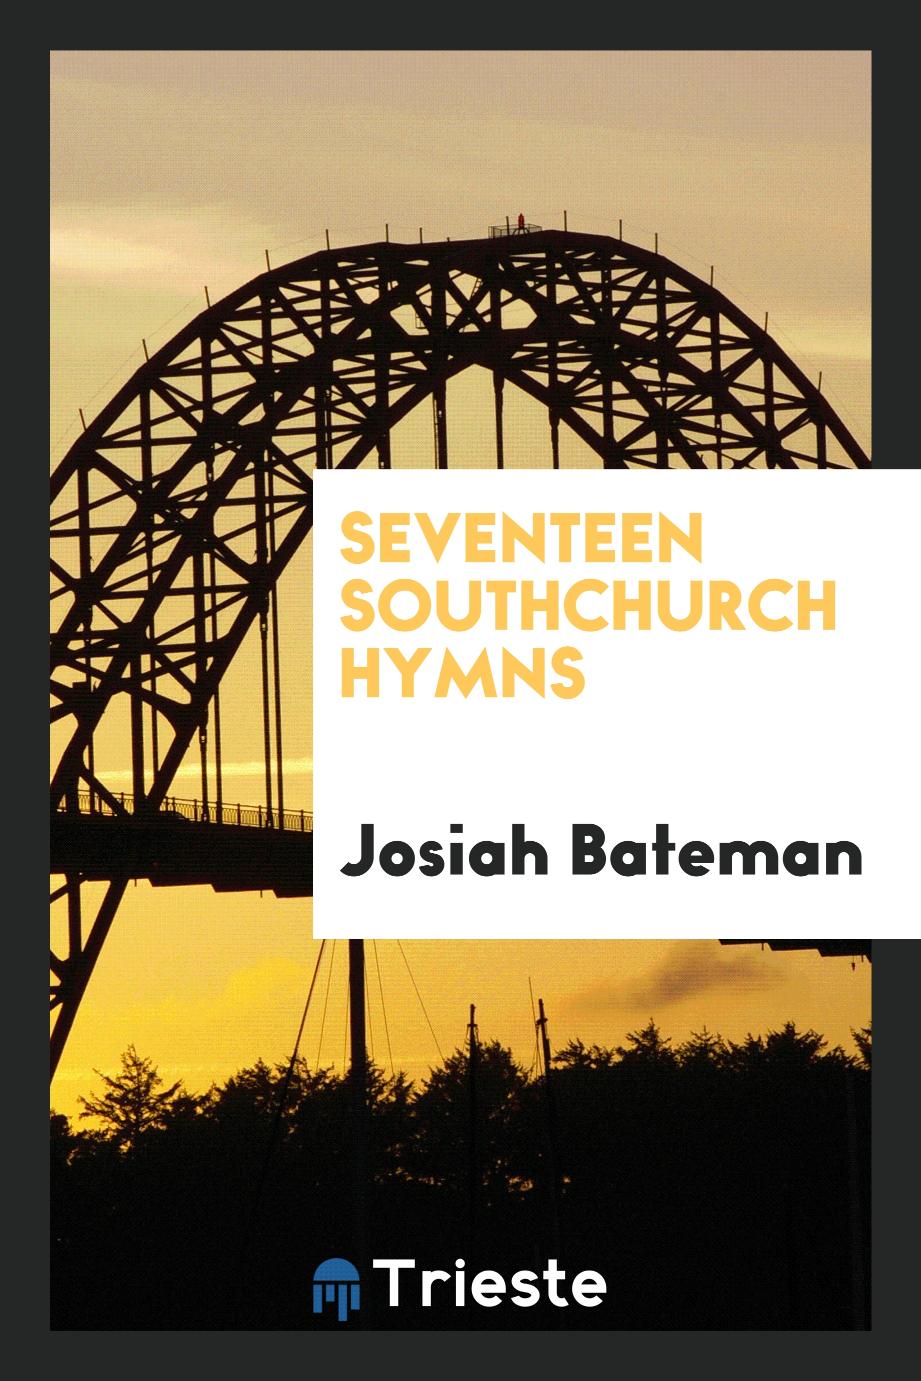 Seventeen Southchurch hymns